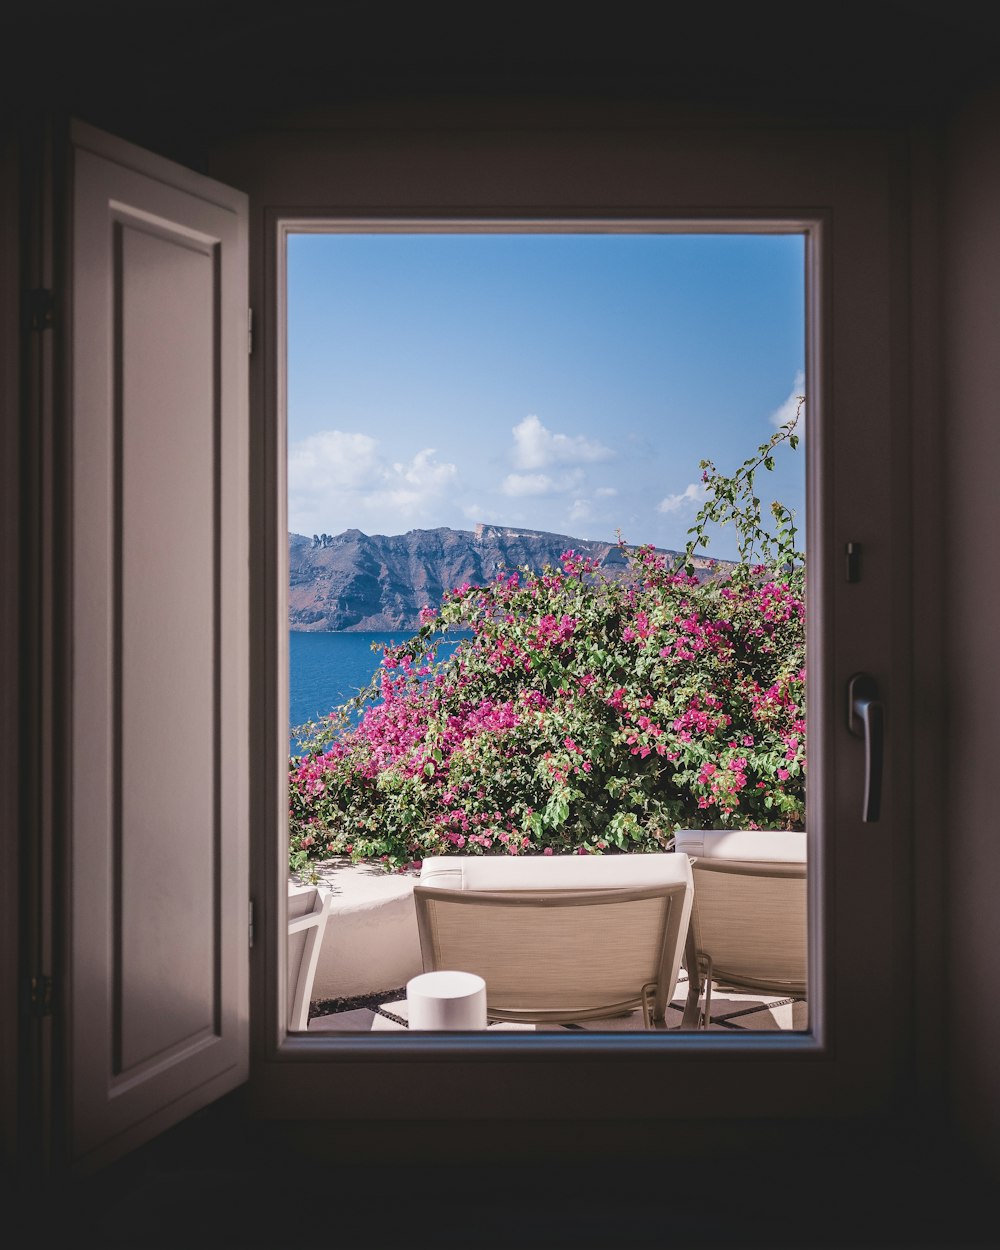 ventana abierta que muestra una tumbona al aire libre y flores rosas con fondo de montaña